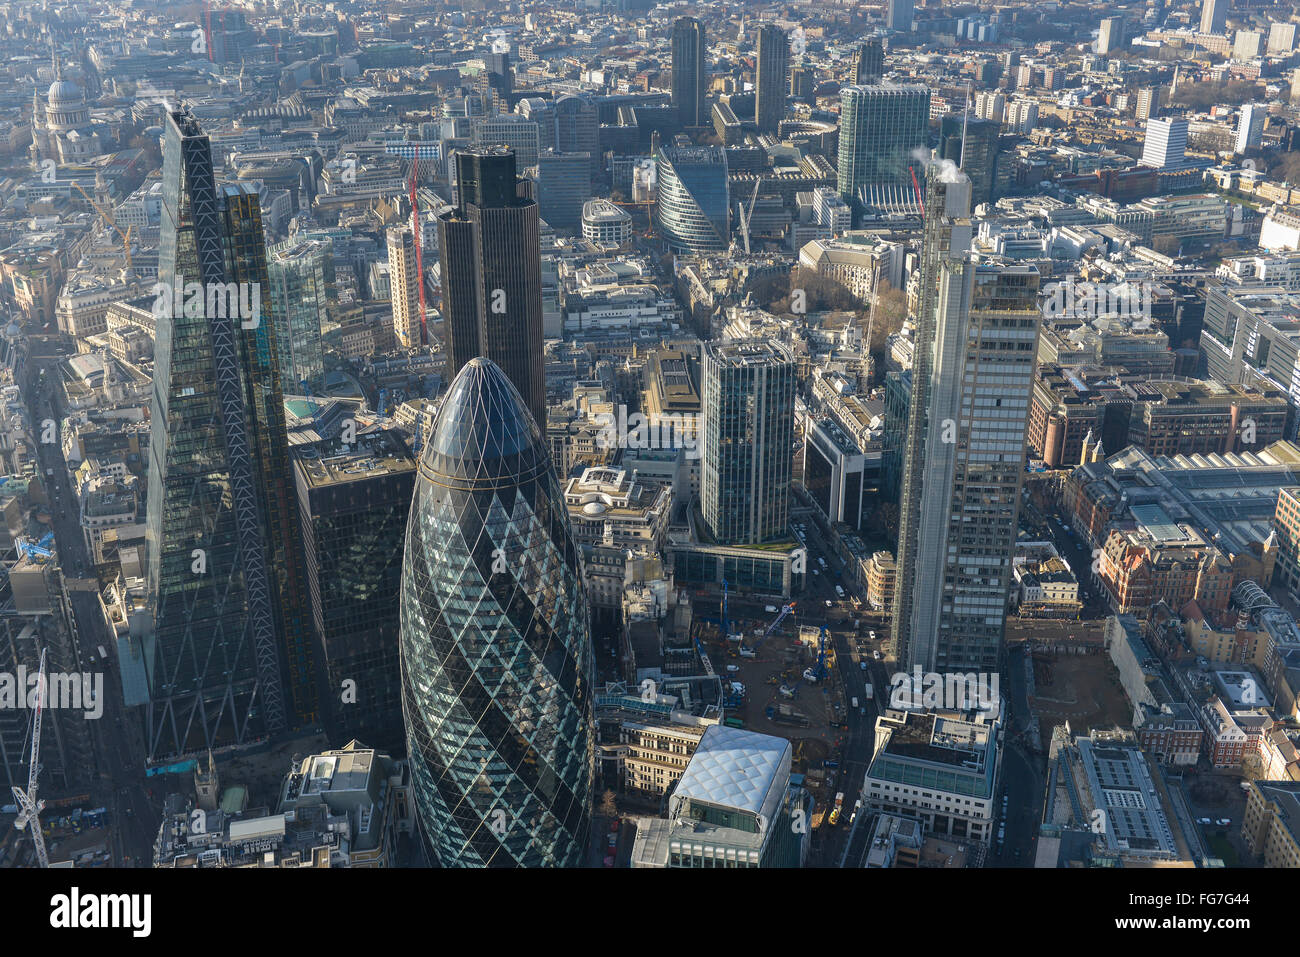 Una veduta aerea di grattacieli nella città di London financial district Foto Stock